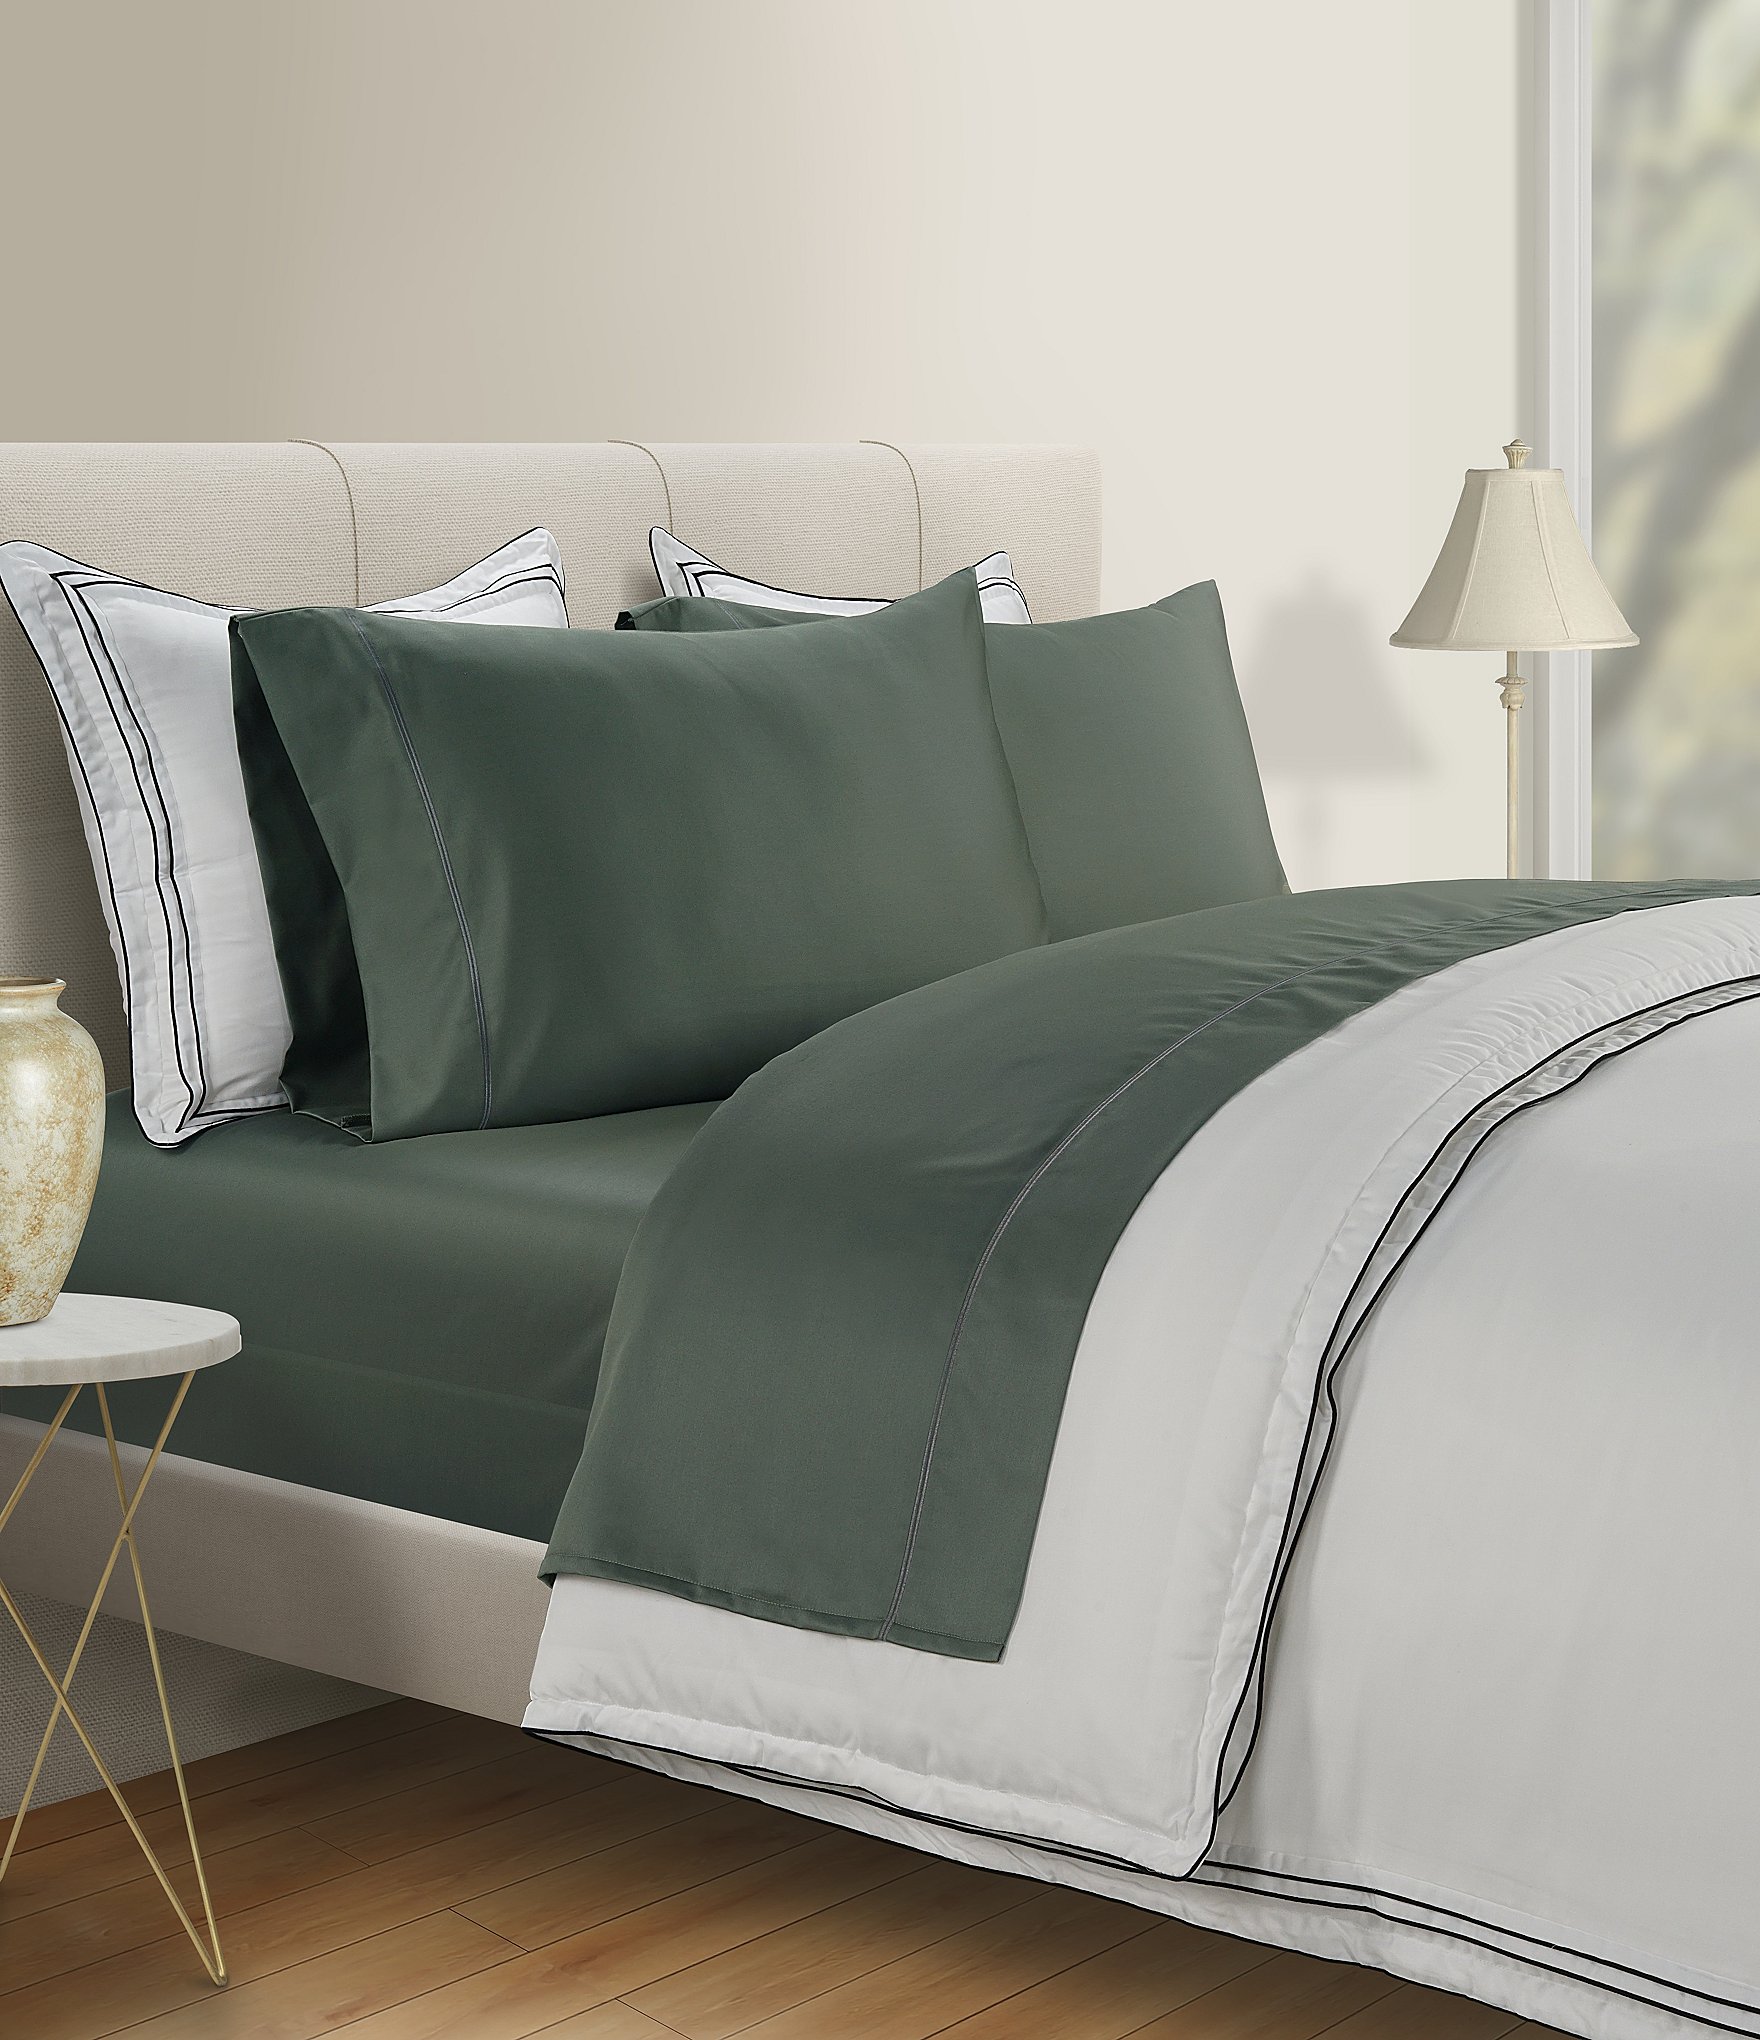 Bed Sheets | Dillard's